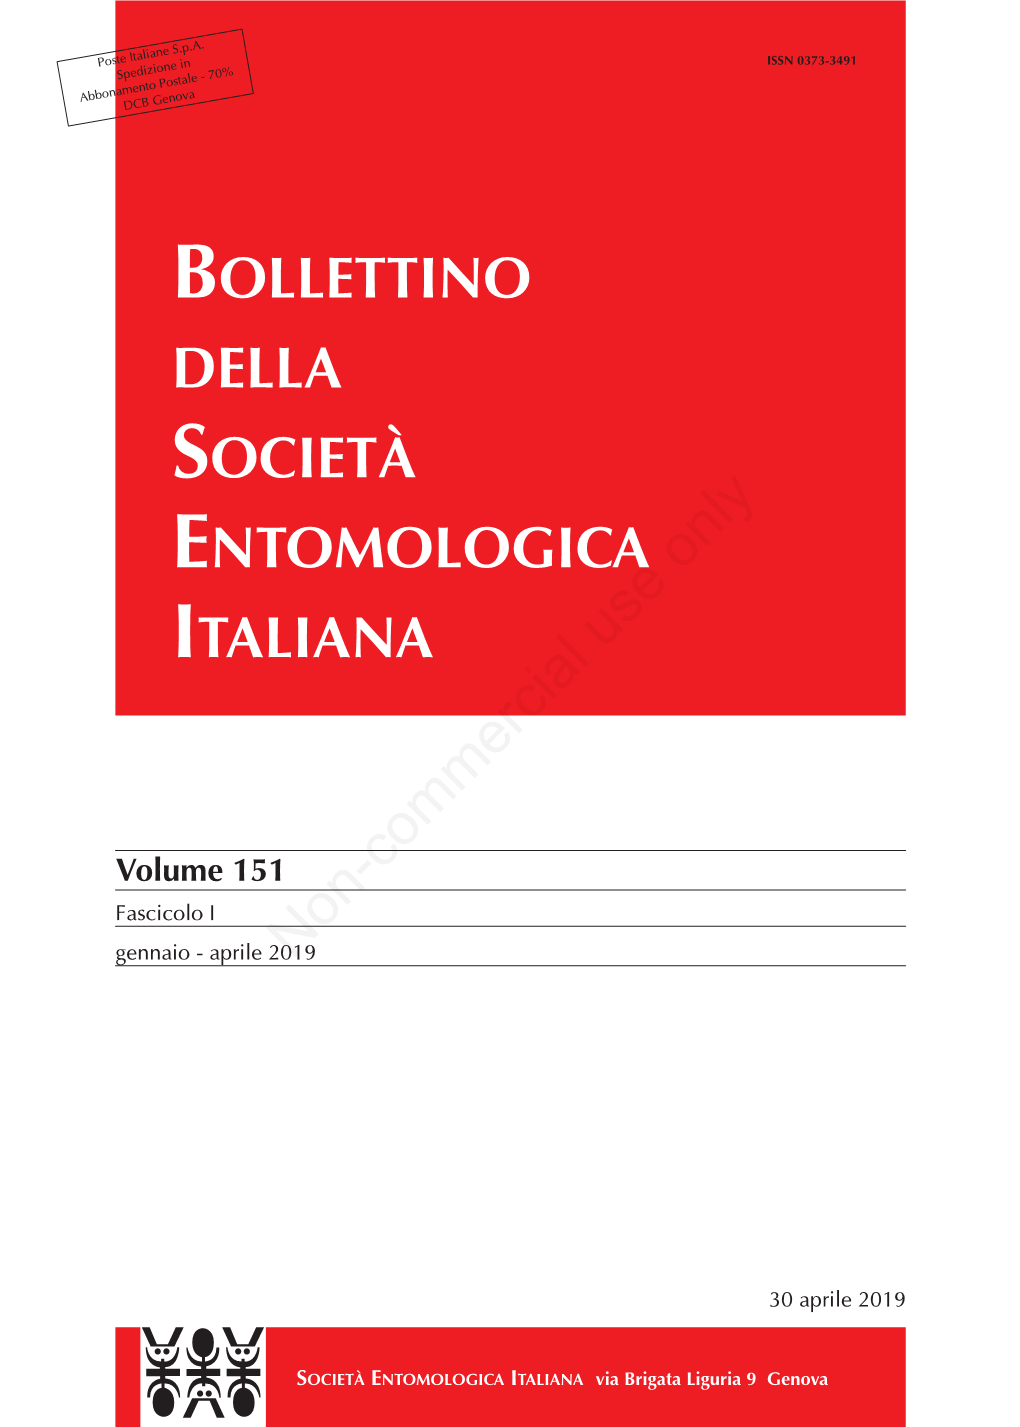 BOLLETTINO DELLA SOCIETÀ ENTOMOLOGICA ITALIANA Non